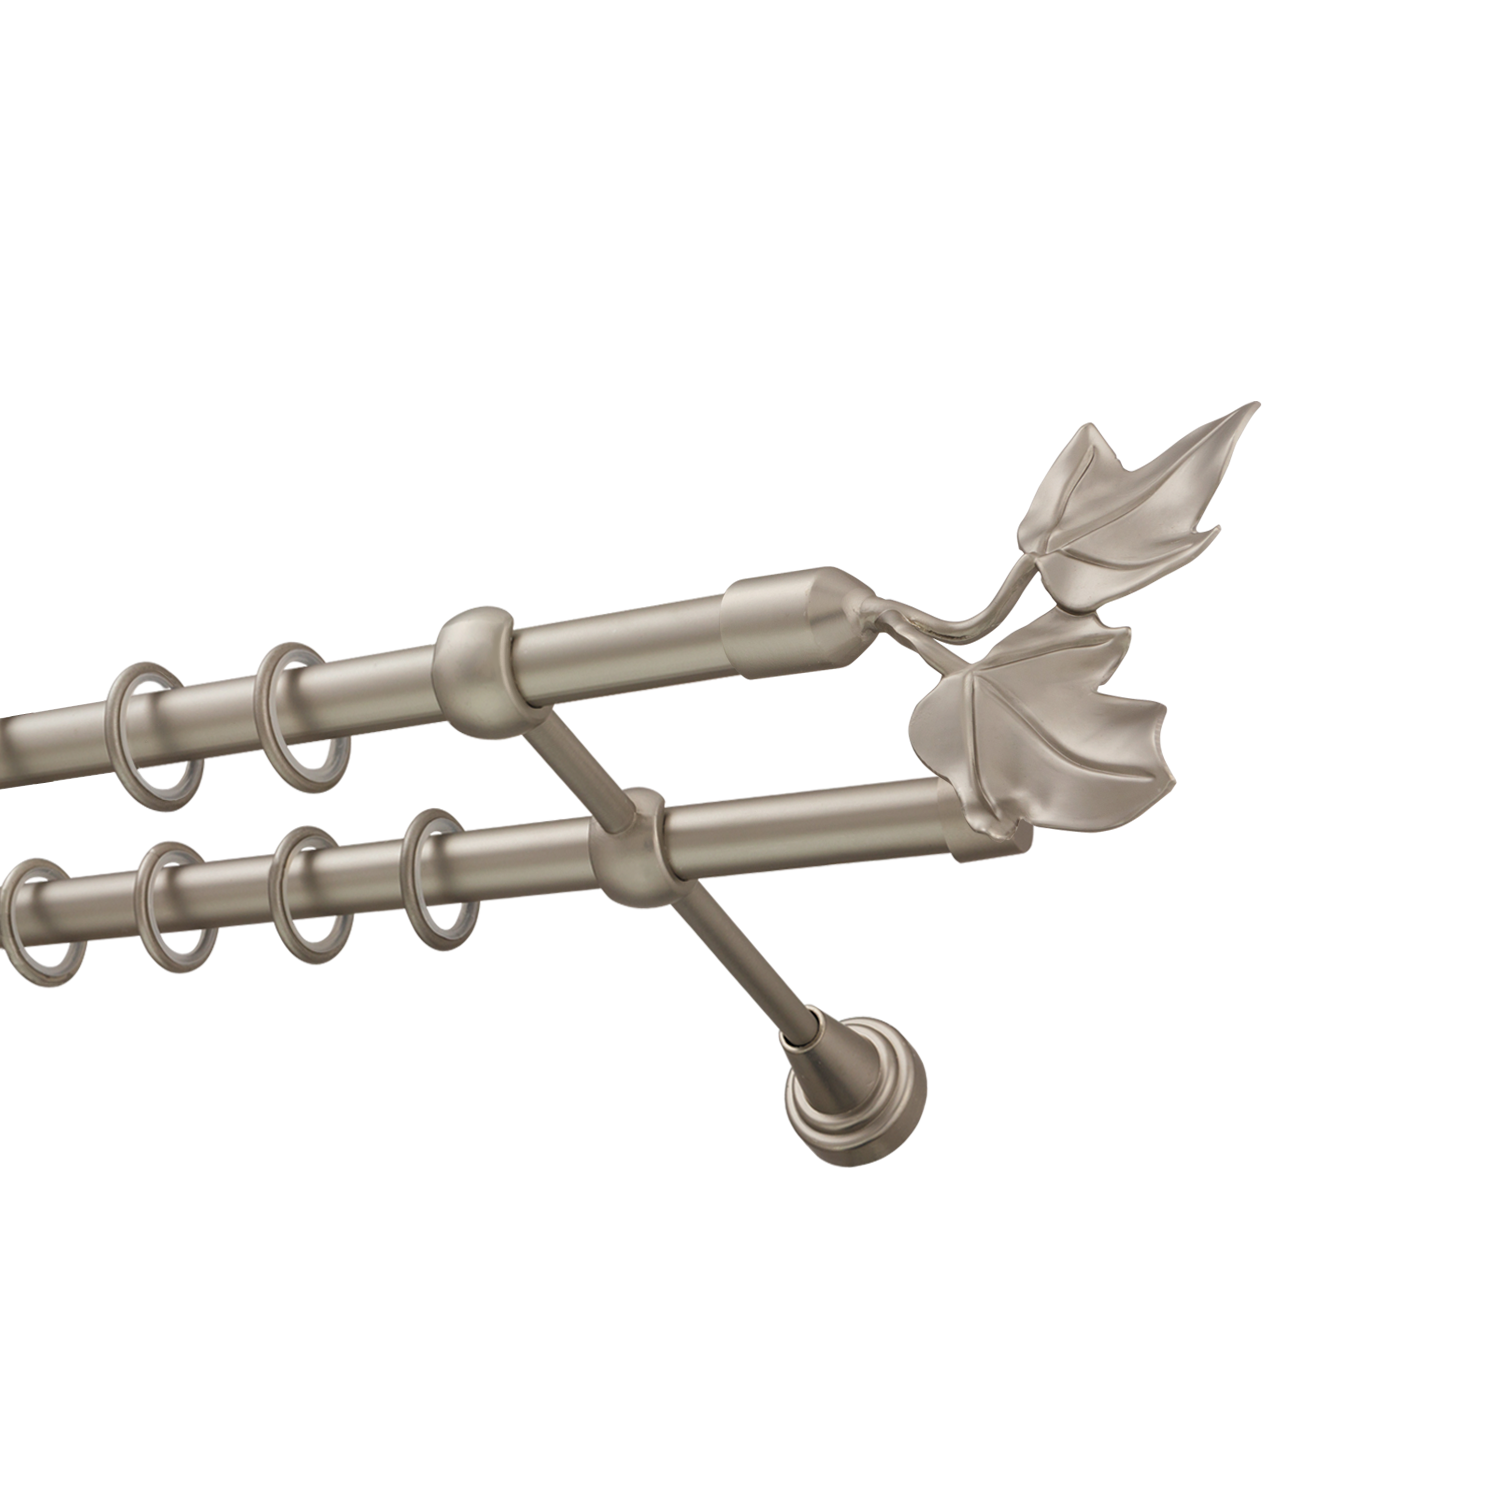 Металлический карниз для штор Листья, двухрядный 16/16 мм, сталь, гладкая штанга, длина 240 см - фото Wikidecor.ru